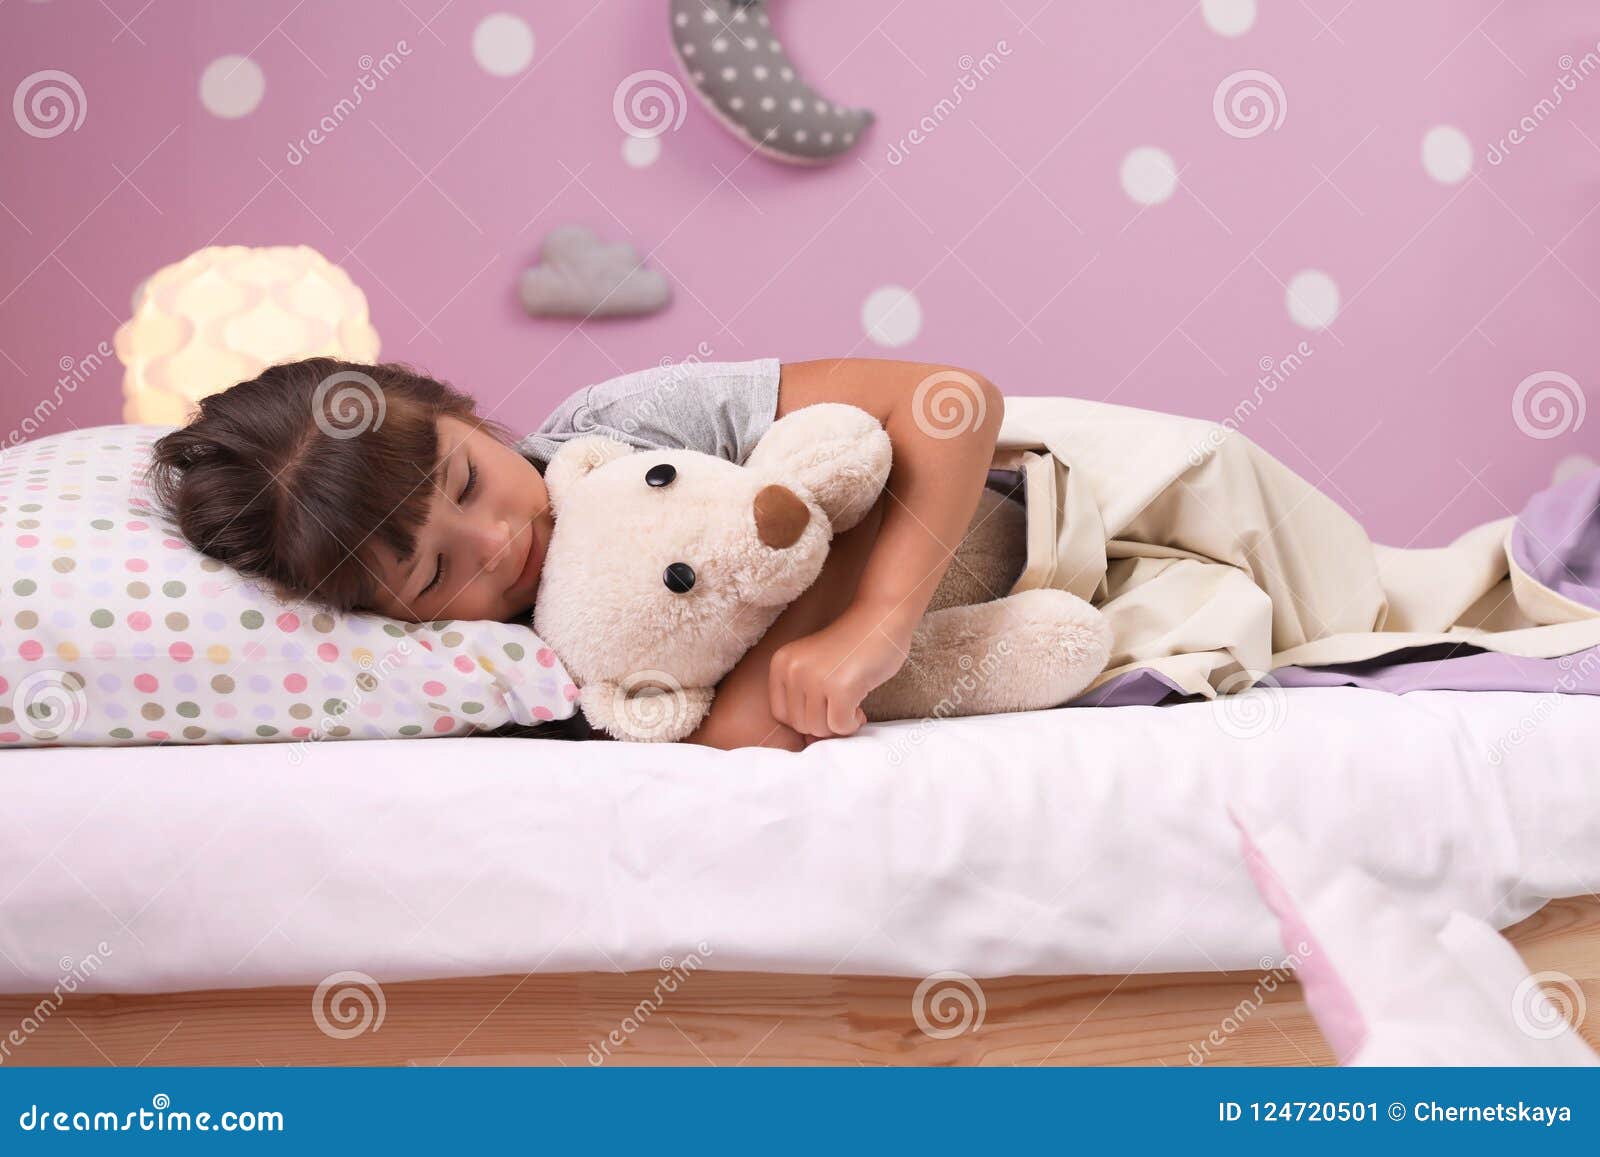 Крошки во сне. Плюшевый медведь в постели.